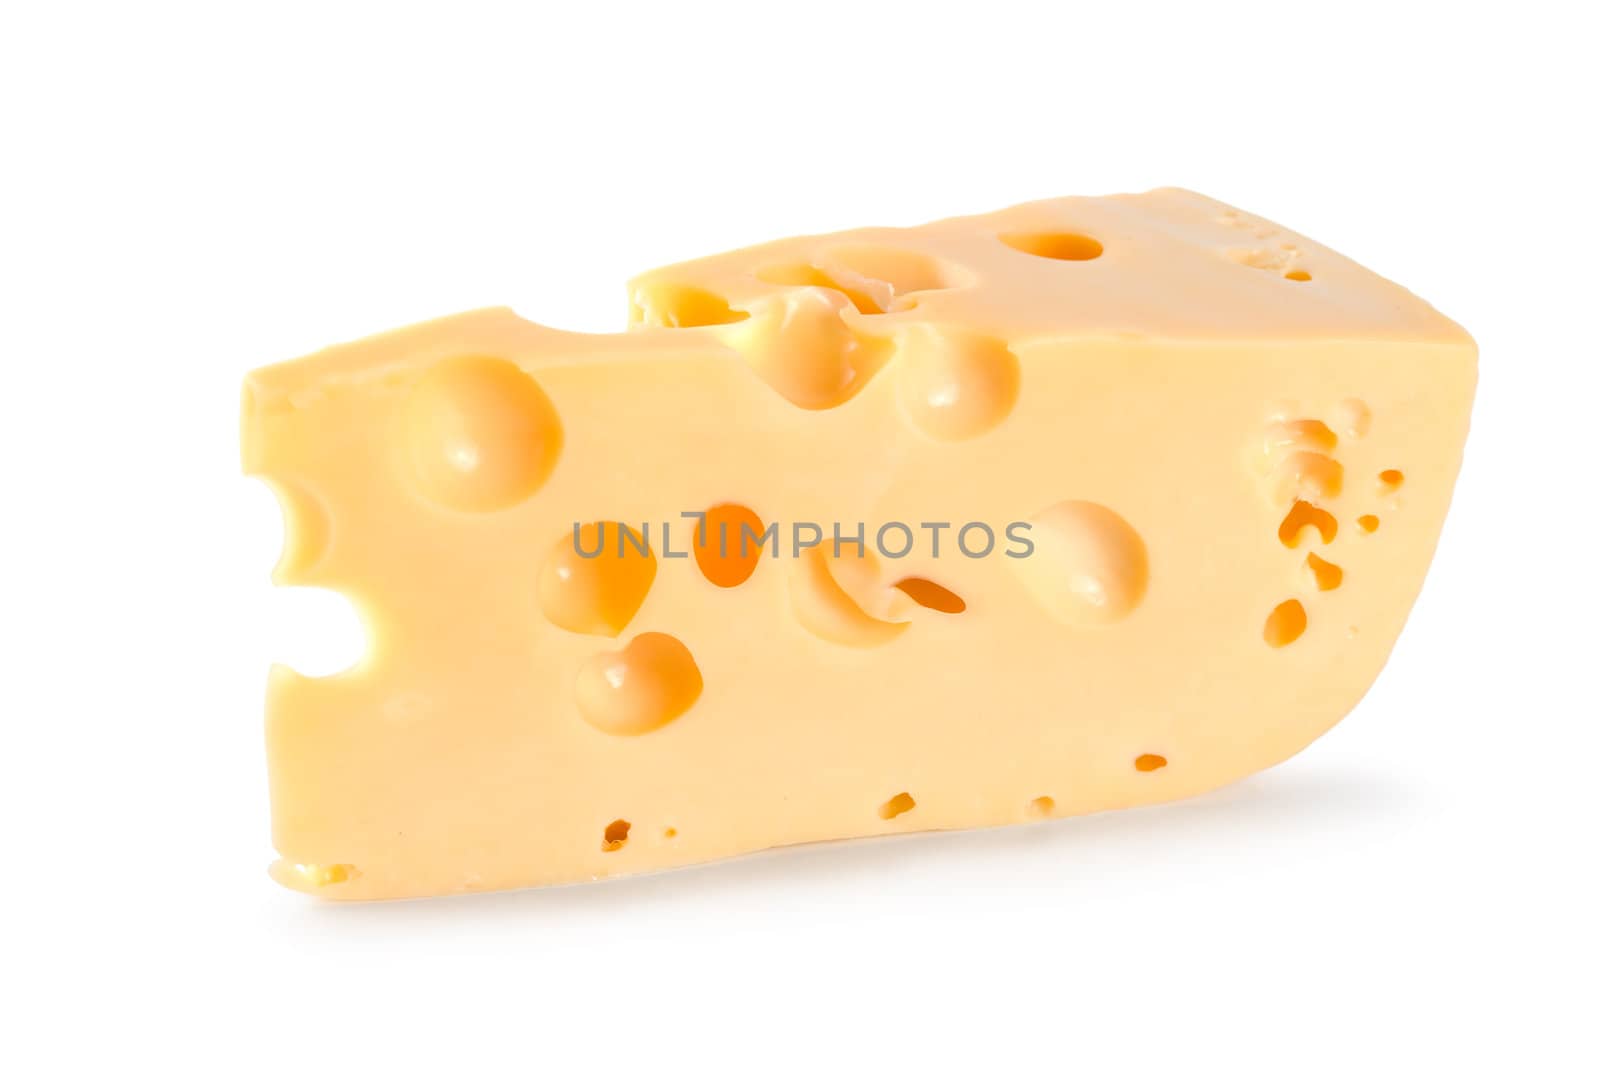 Dutch farmer's cheese by Givaga